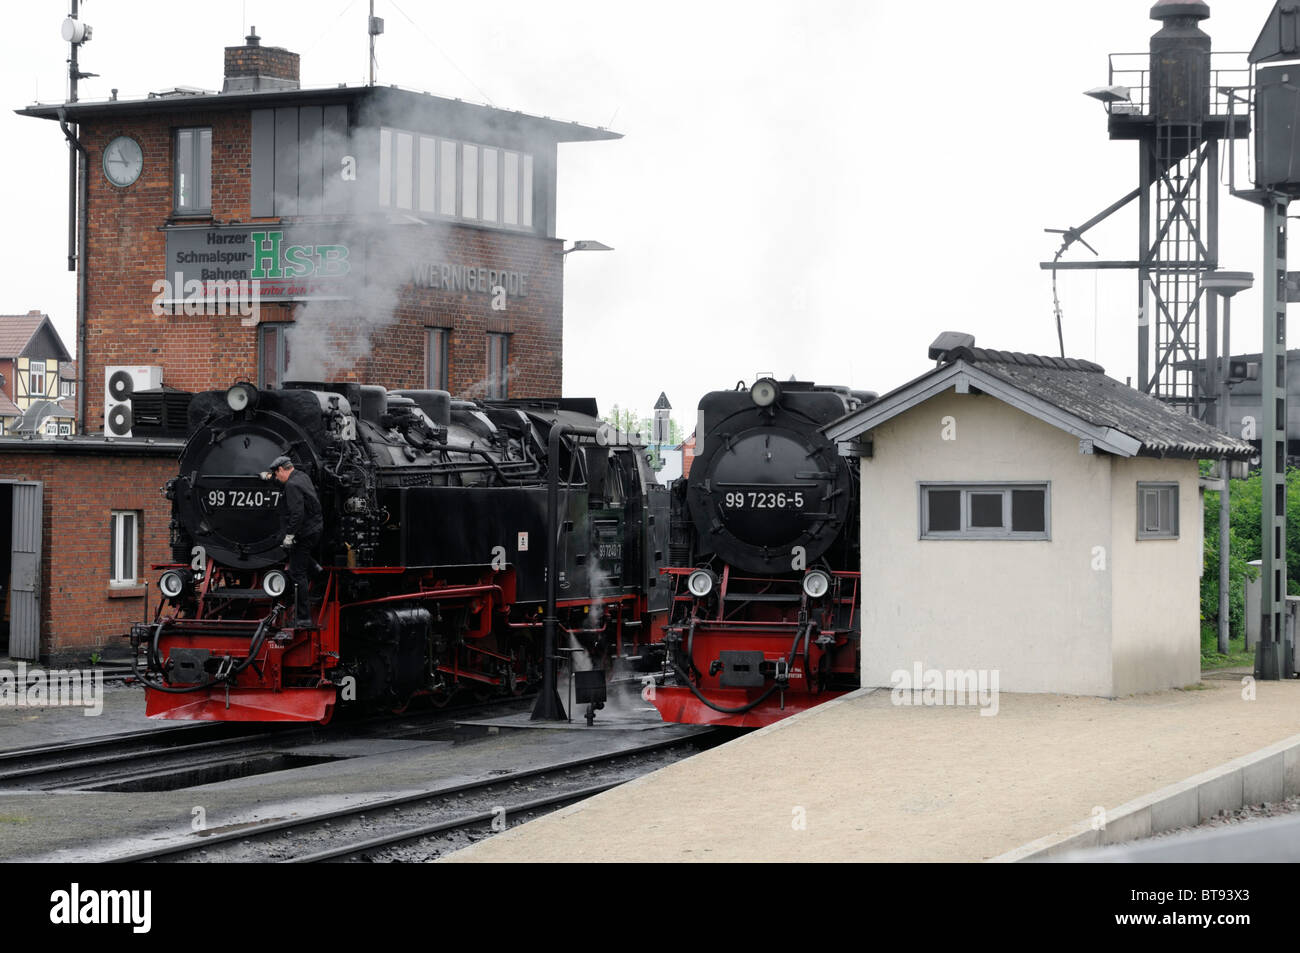 Dampflokomotiven in Wernigerode, Sachsen-Anhalt, Deutschland. - Steam locomotives in Wernigerode, Saxony-Anhalt, Germany. Stock Photo